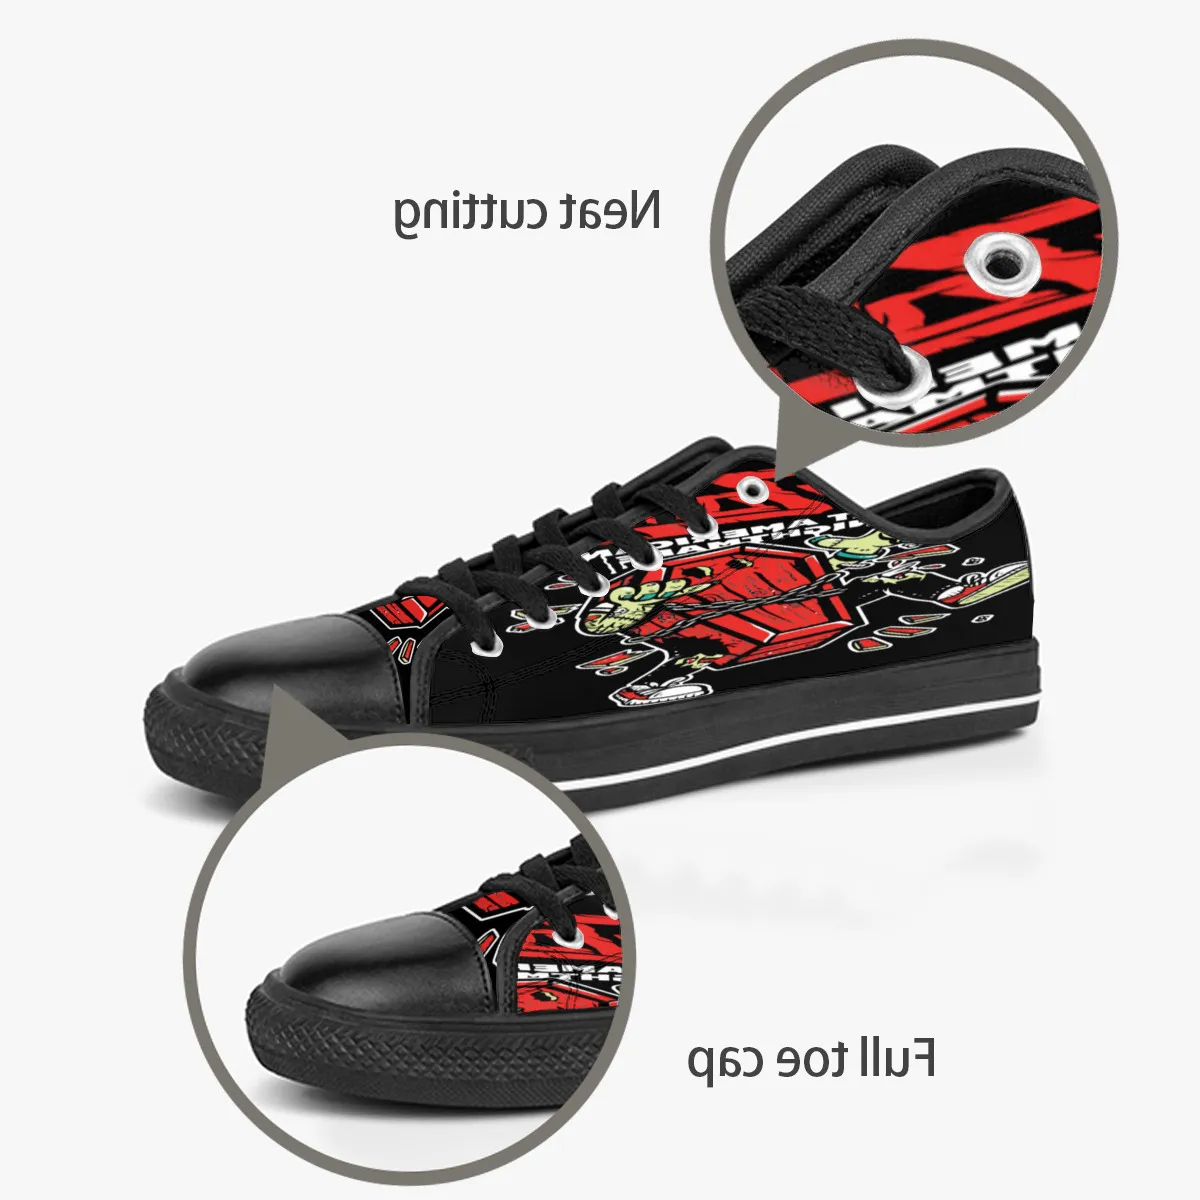 Hombres Mujeres DIY zapatos personalizados low top Canvas Skateboard sneakers triple negro personalización UV impresión deportes zapatillas dongwu 181-3